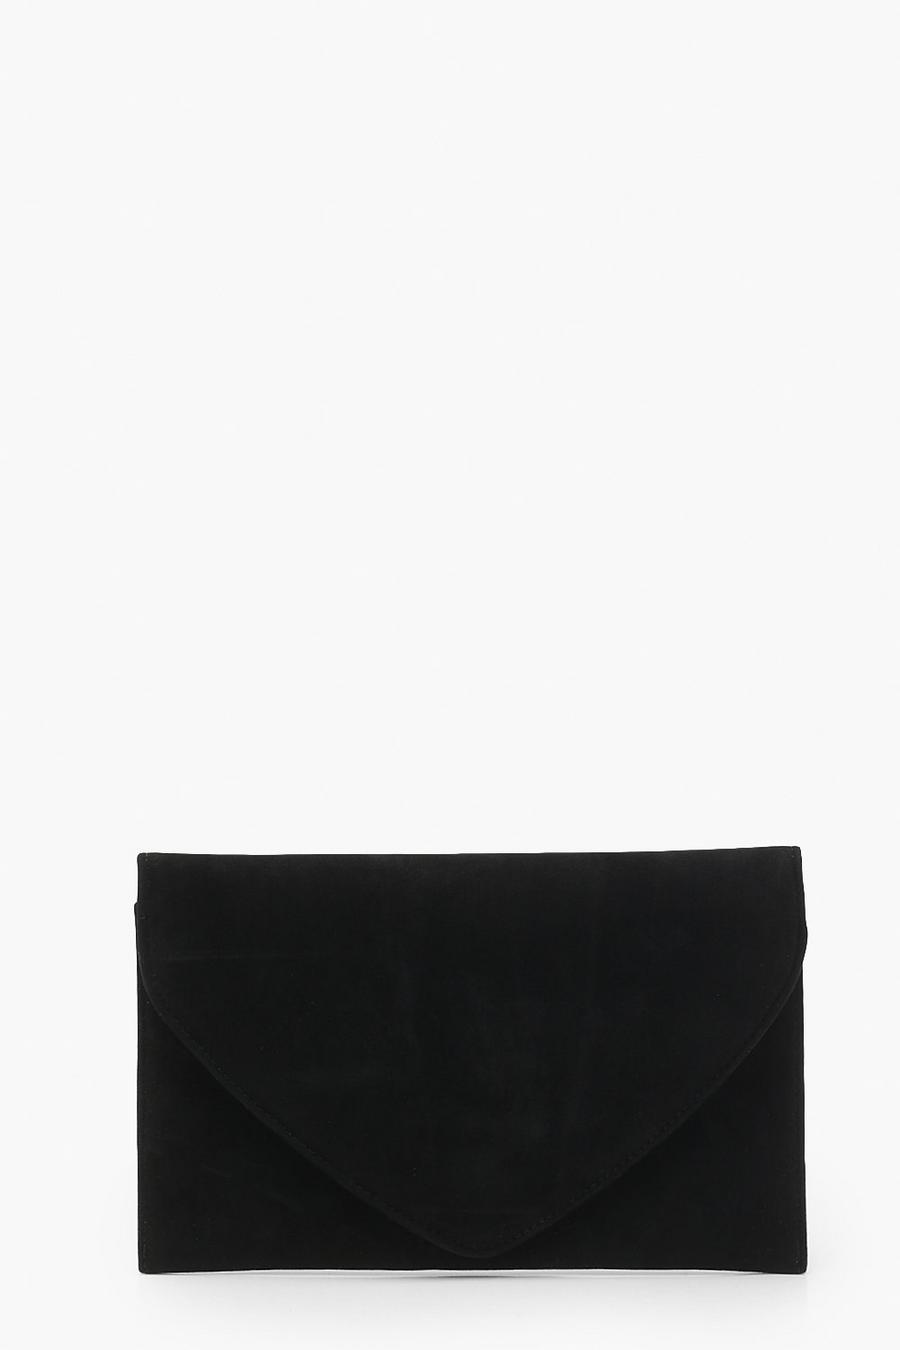 Pochette style enveloppe en faux daim, Noir black